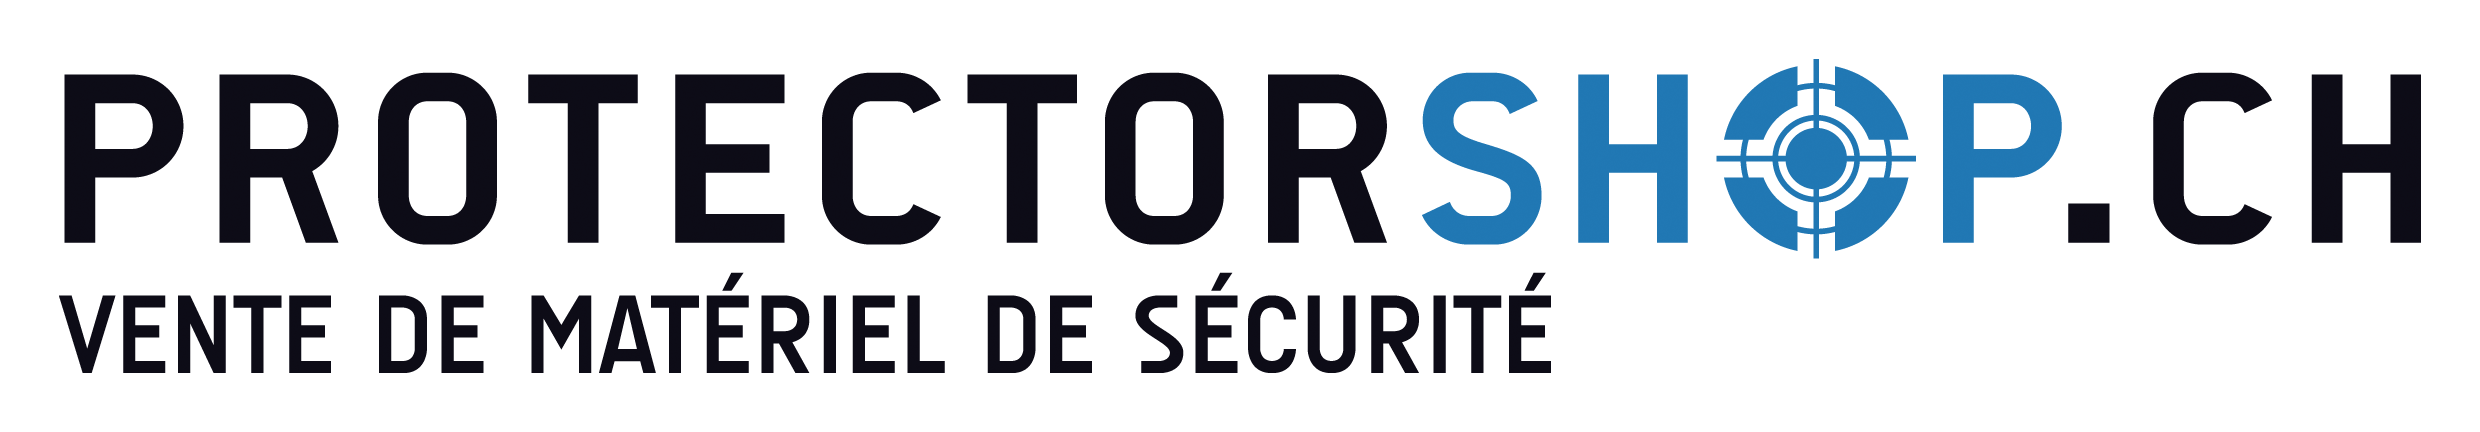 protectorshop_logo